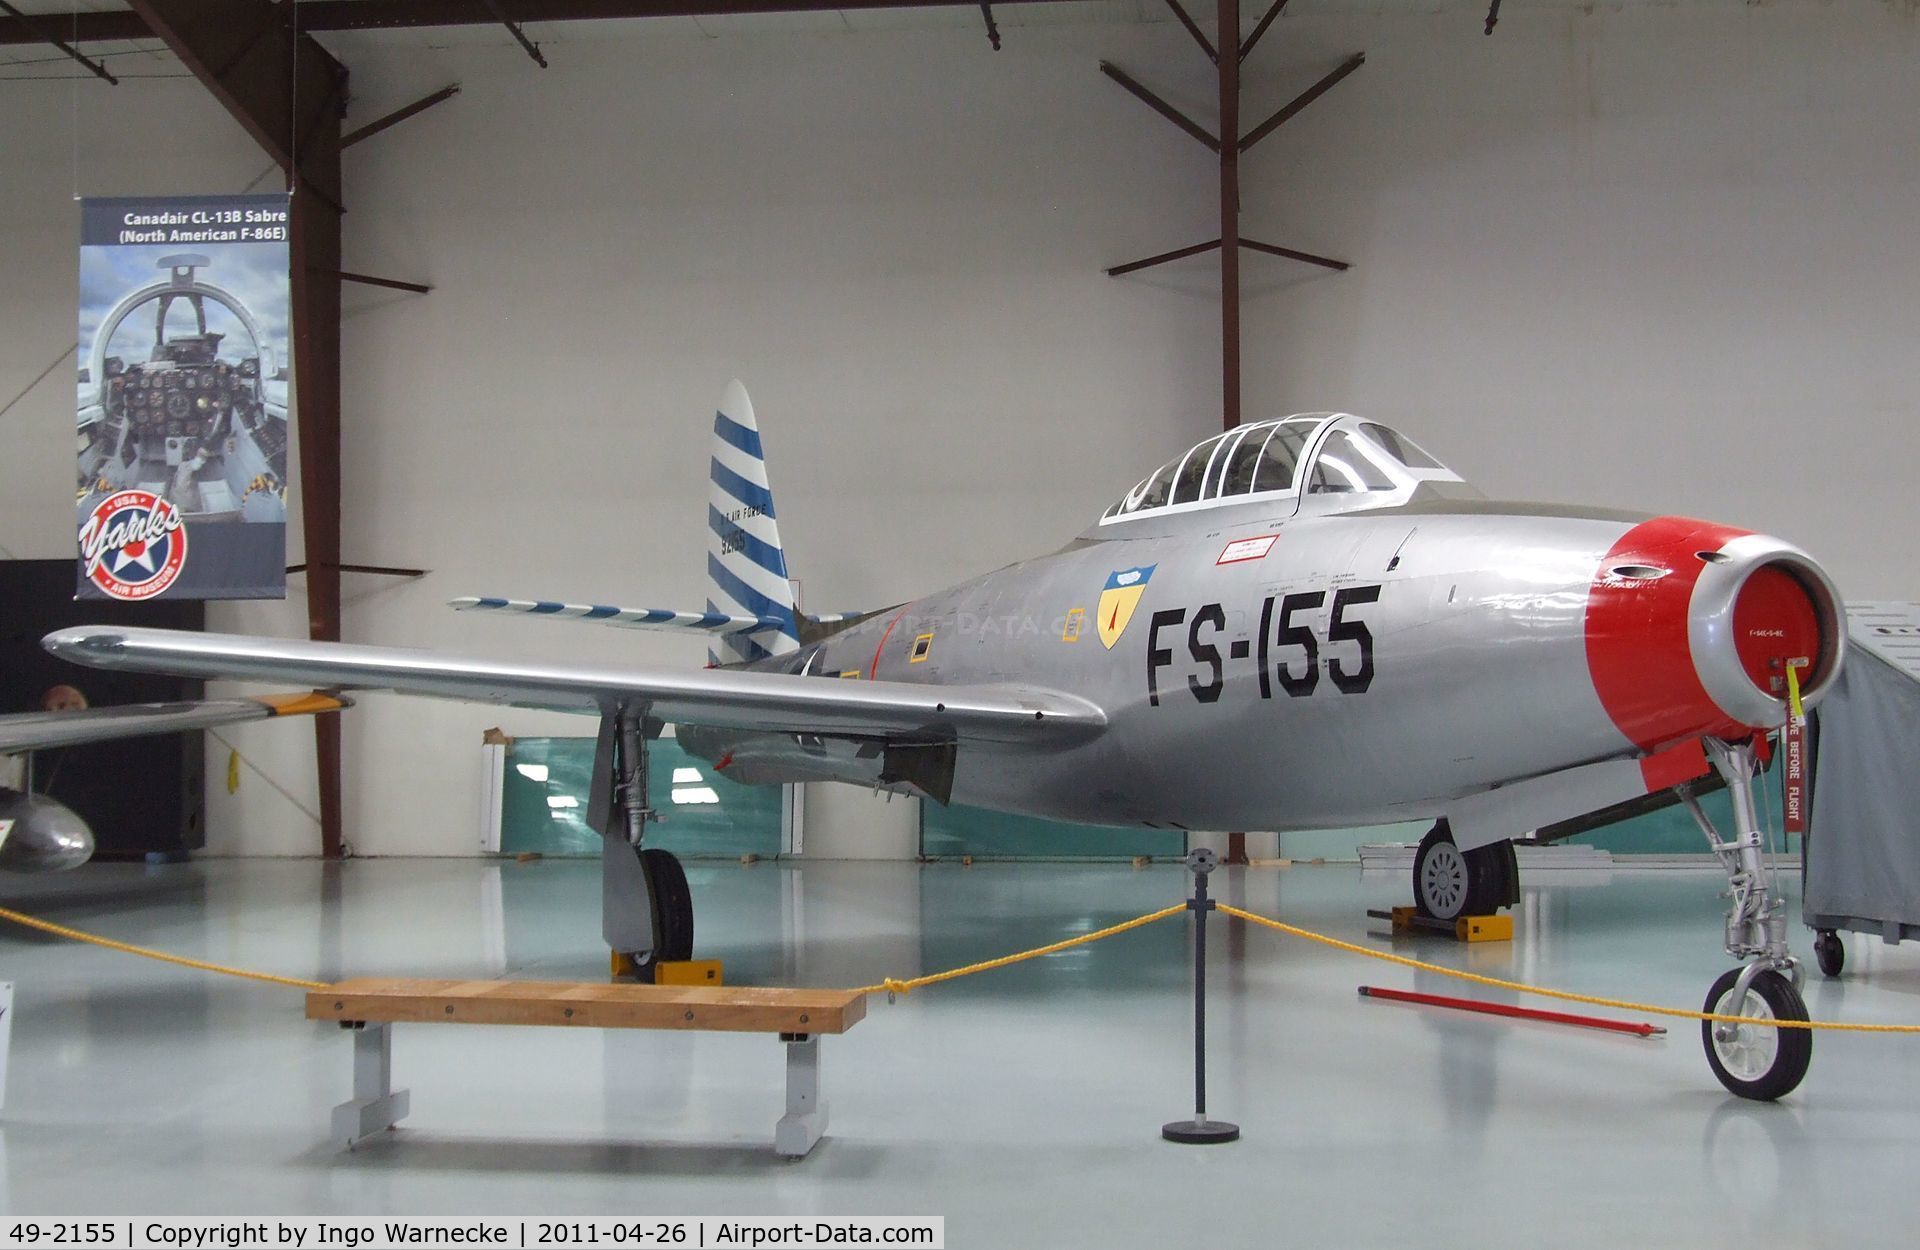 49-2155, 1949 Republic F-84E Thunderjet C/N Not found 49-2155, Republic F-84E Thunderjet at the Yanks Air Museum, Chino CA